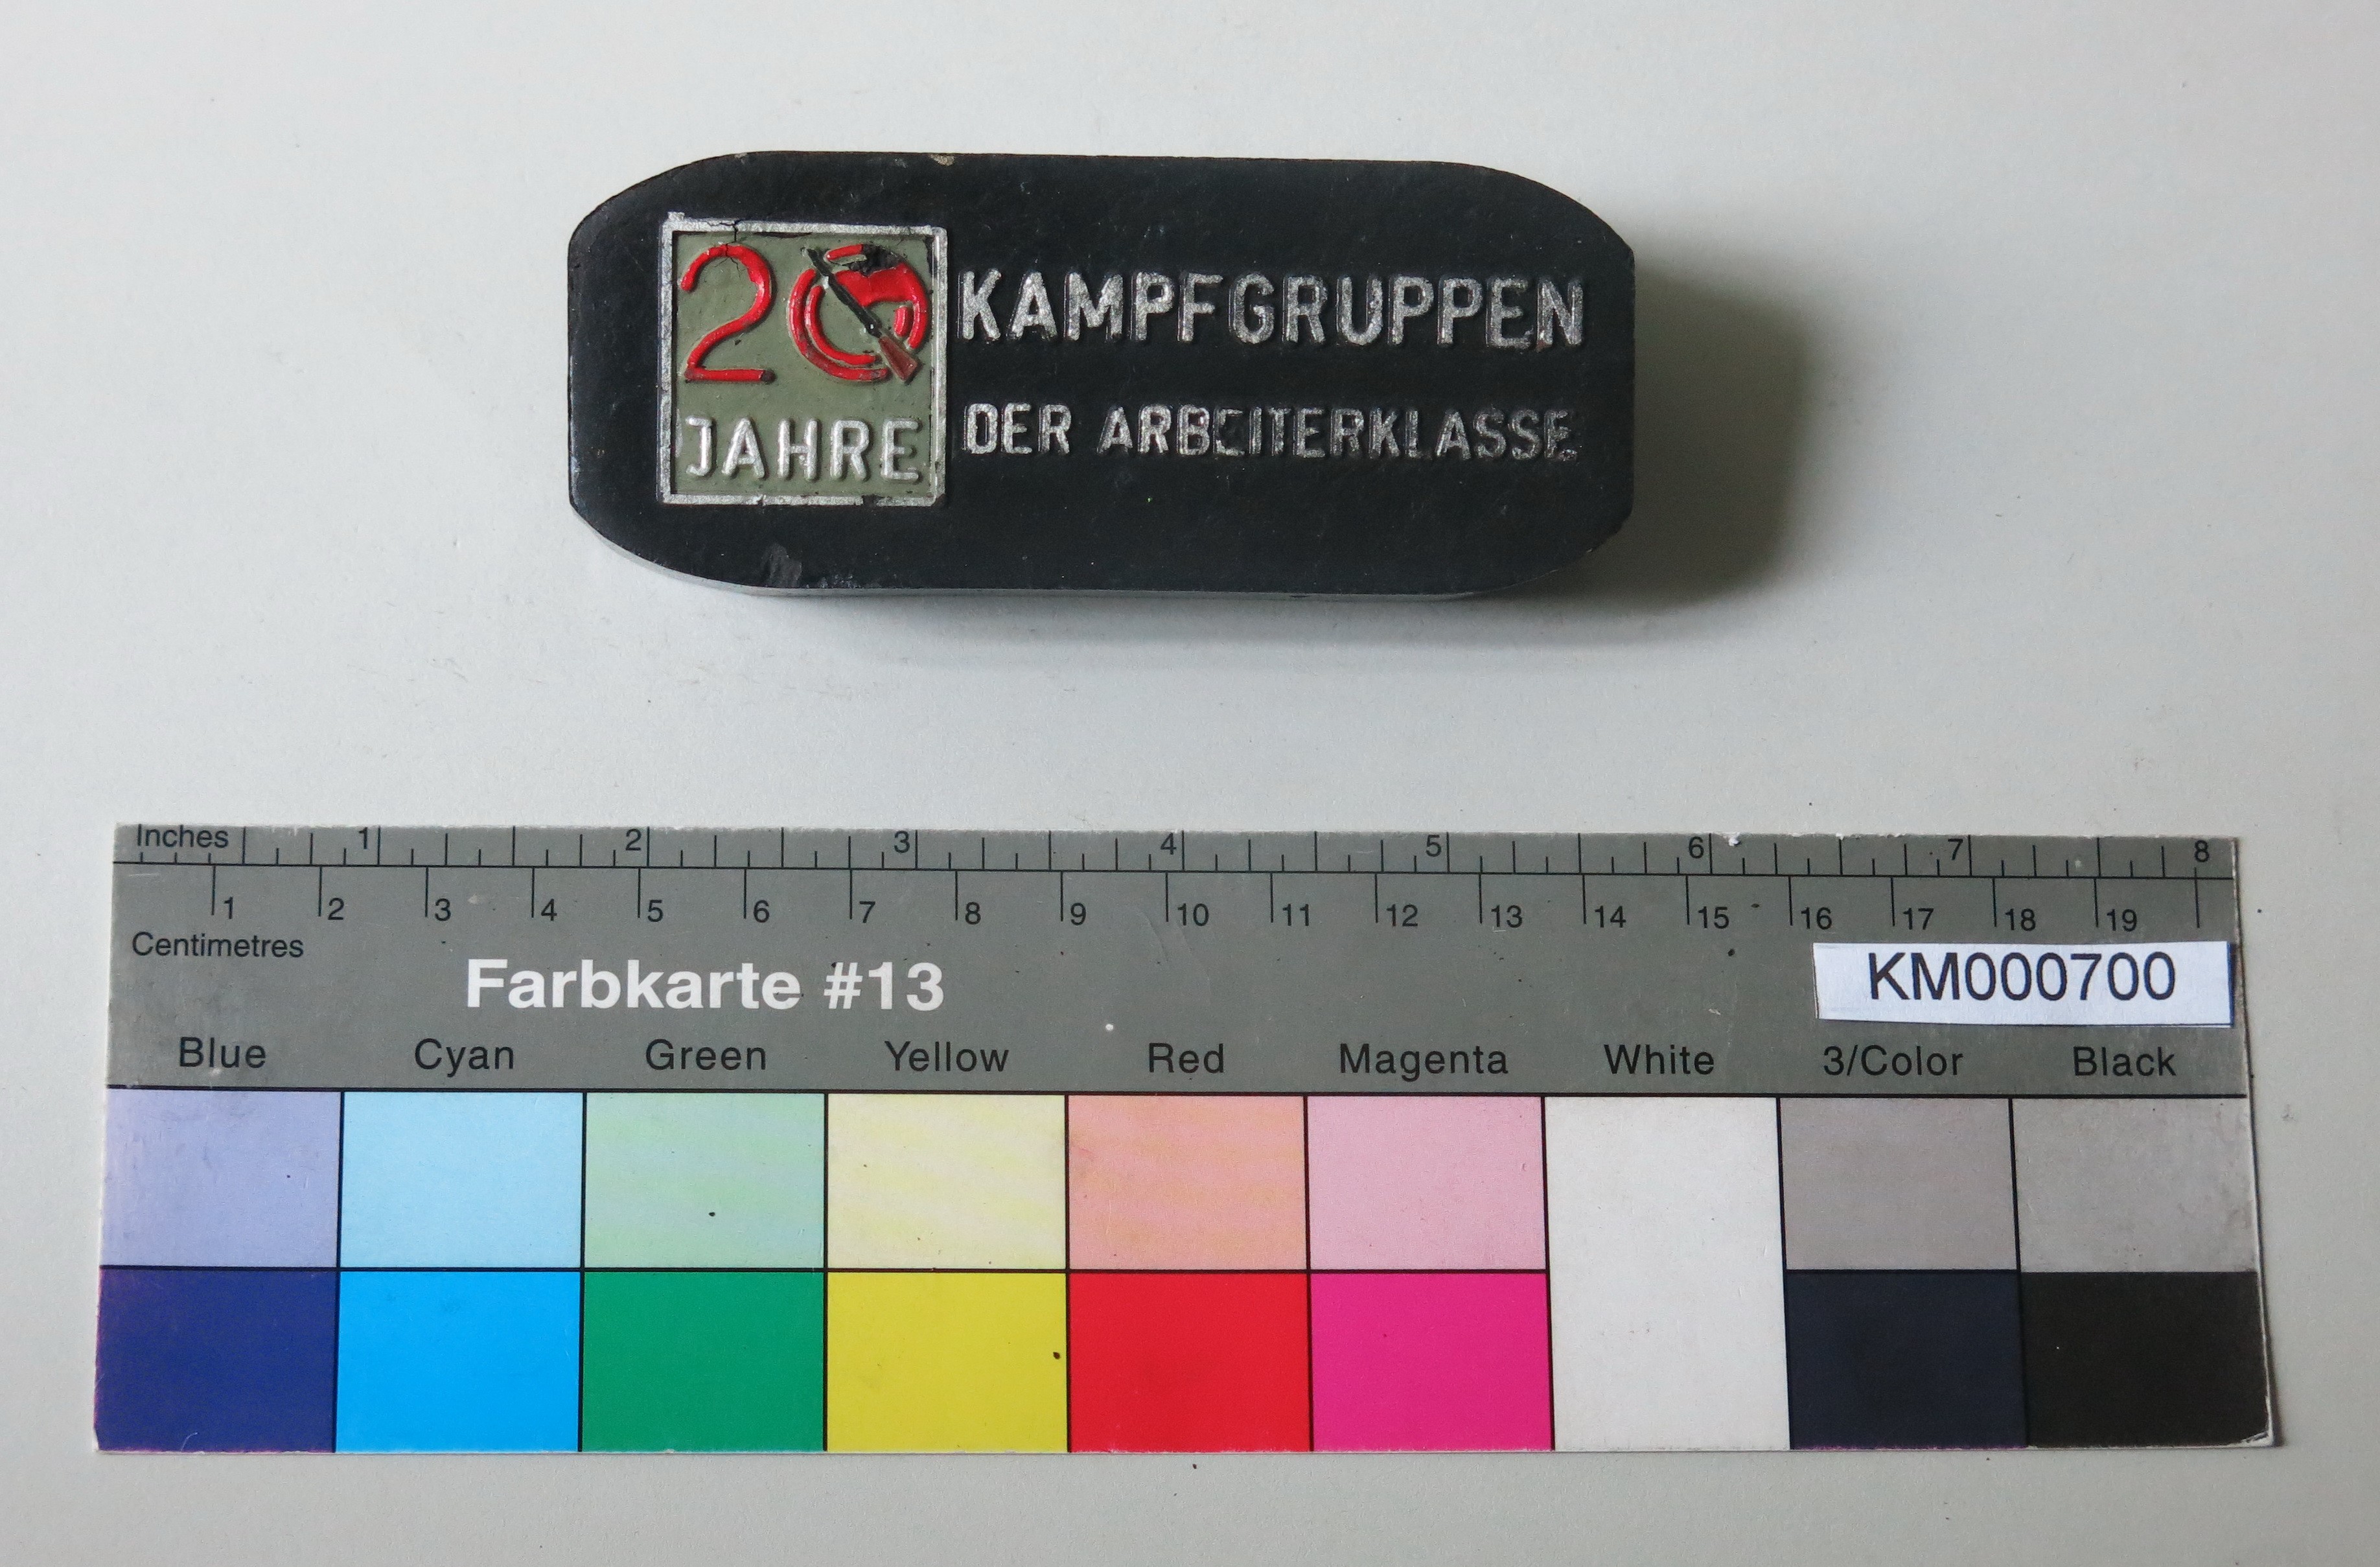 Zierbrikett "KAMPFGRUPPEN DER ARBEITERKLASSE 20 JAHRE" (Energiefabrik Knappenrode CC BY-SA)